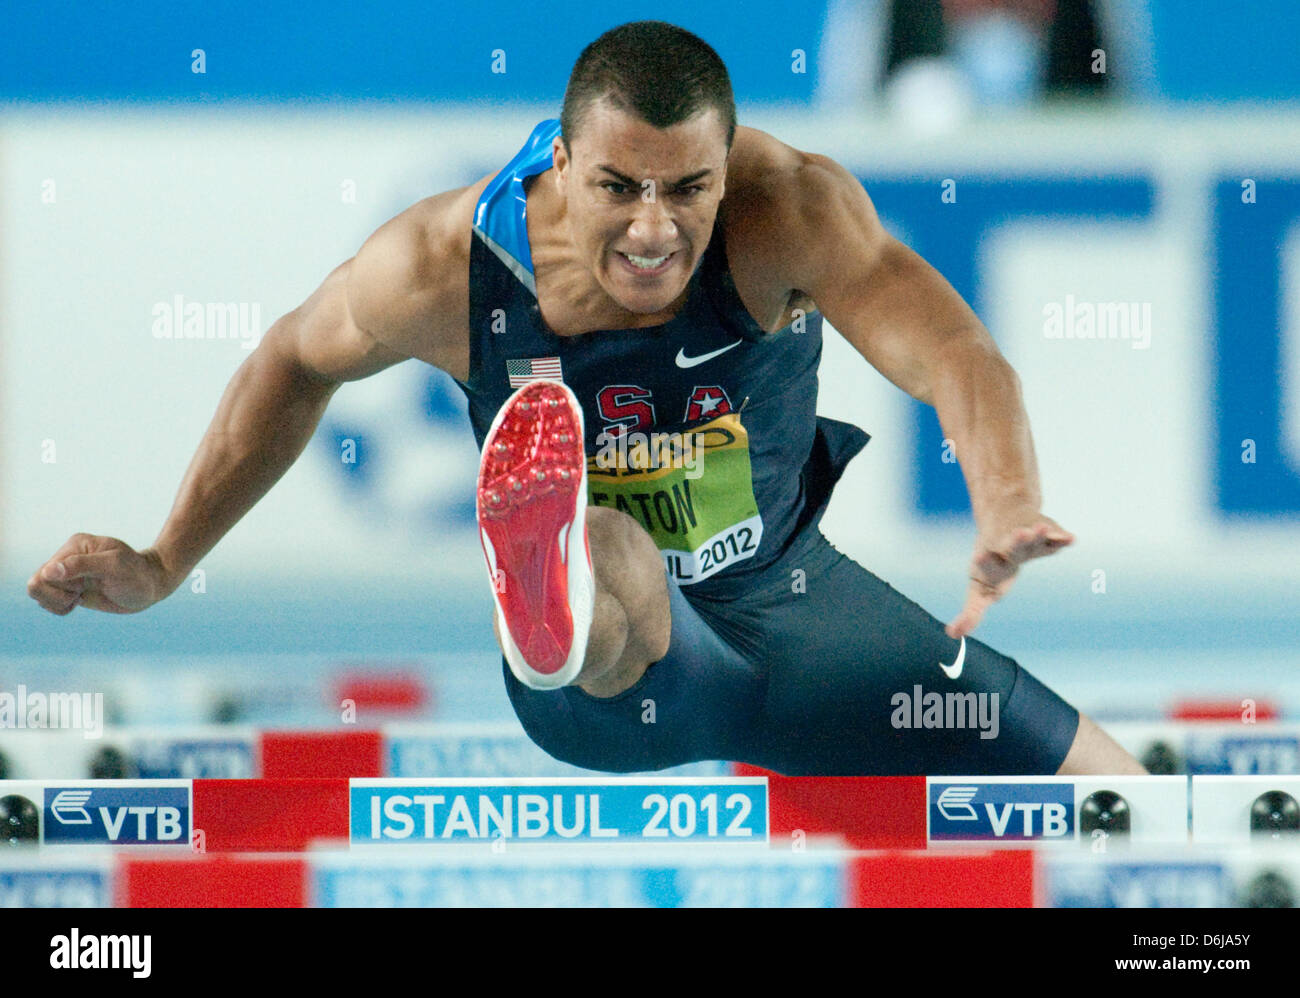 Ashton Eaton der USA konkurriert, während Männer 60m Hürden Siebenkampf bei der Leichtathletik Indoor Weltmeisterschaft in Atakoy Leichtathletik-Arena in Istanbul, Türkei 10 März 2012.Photo: Bernd Thissen Dpa Stockfoto